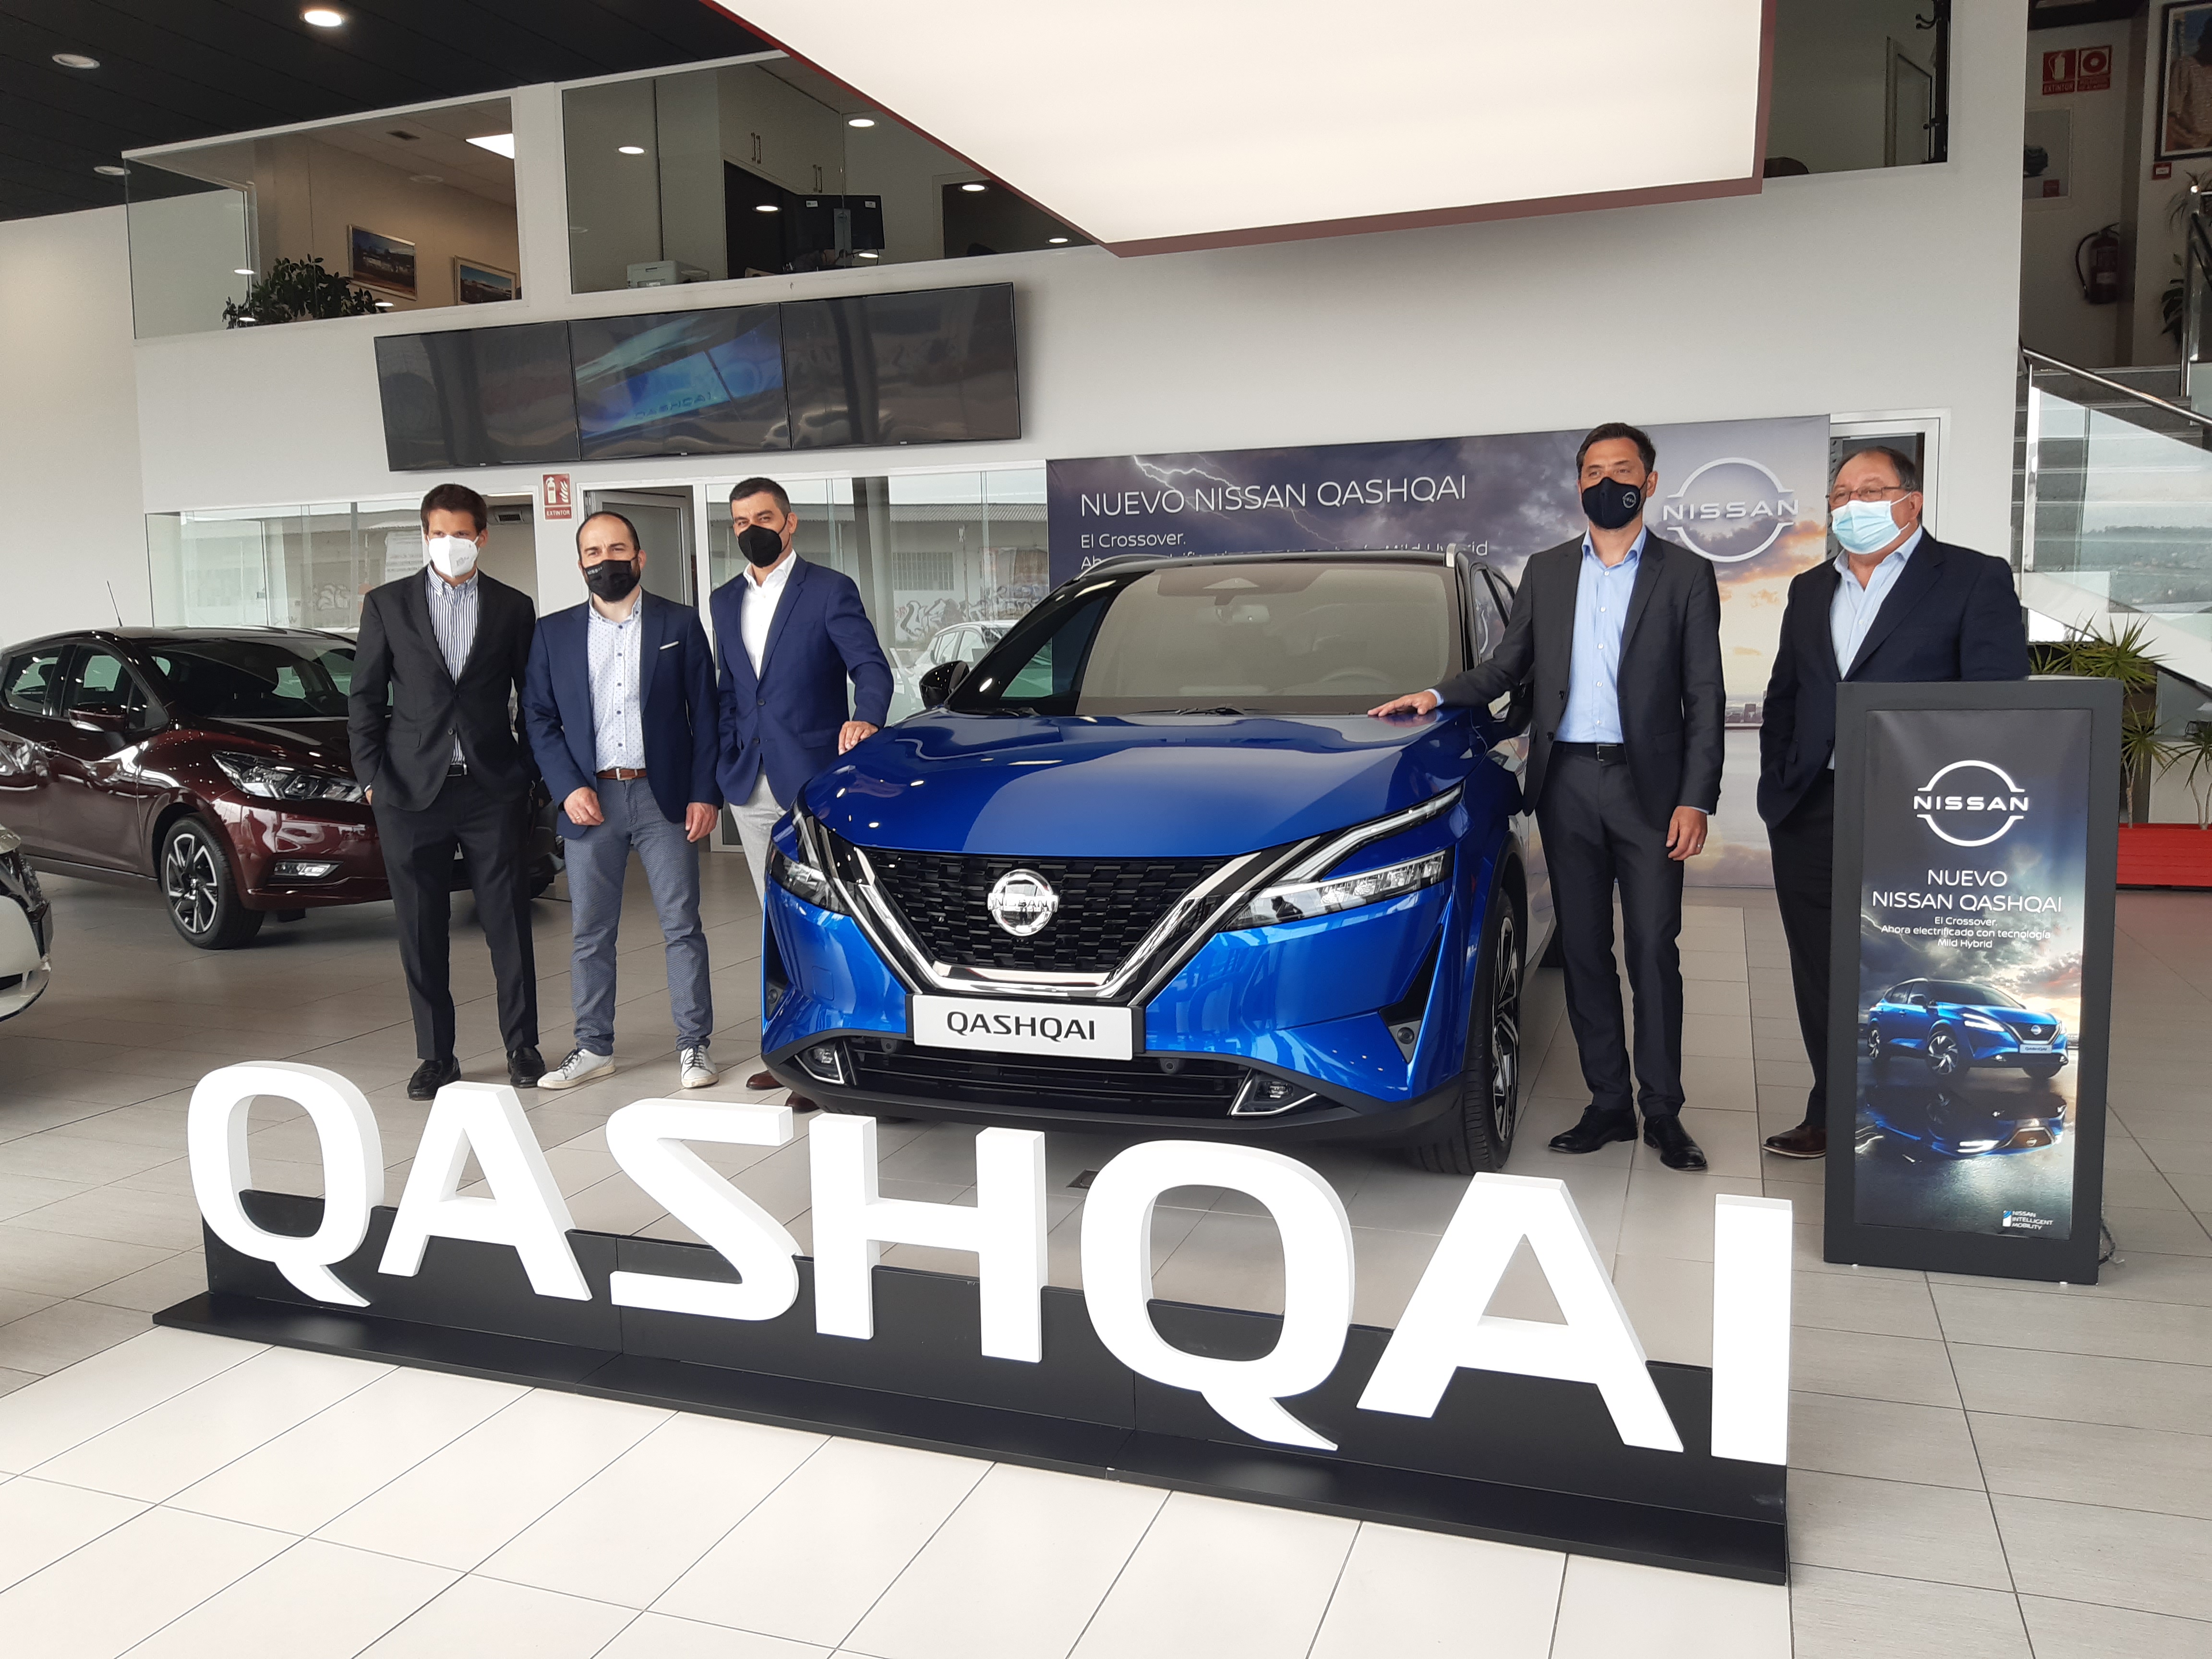 Imagen de la presentación del nuevo Nissan Qashqai en Rofervigo